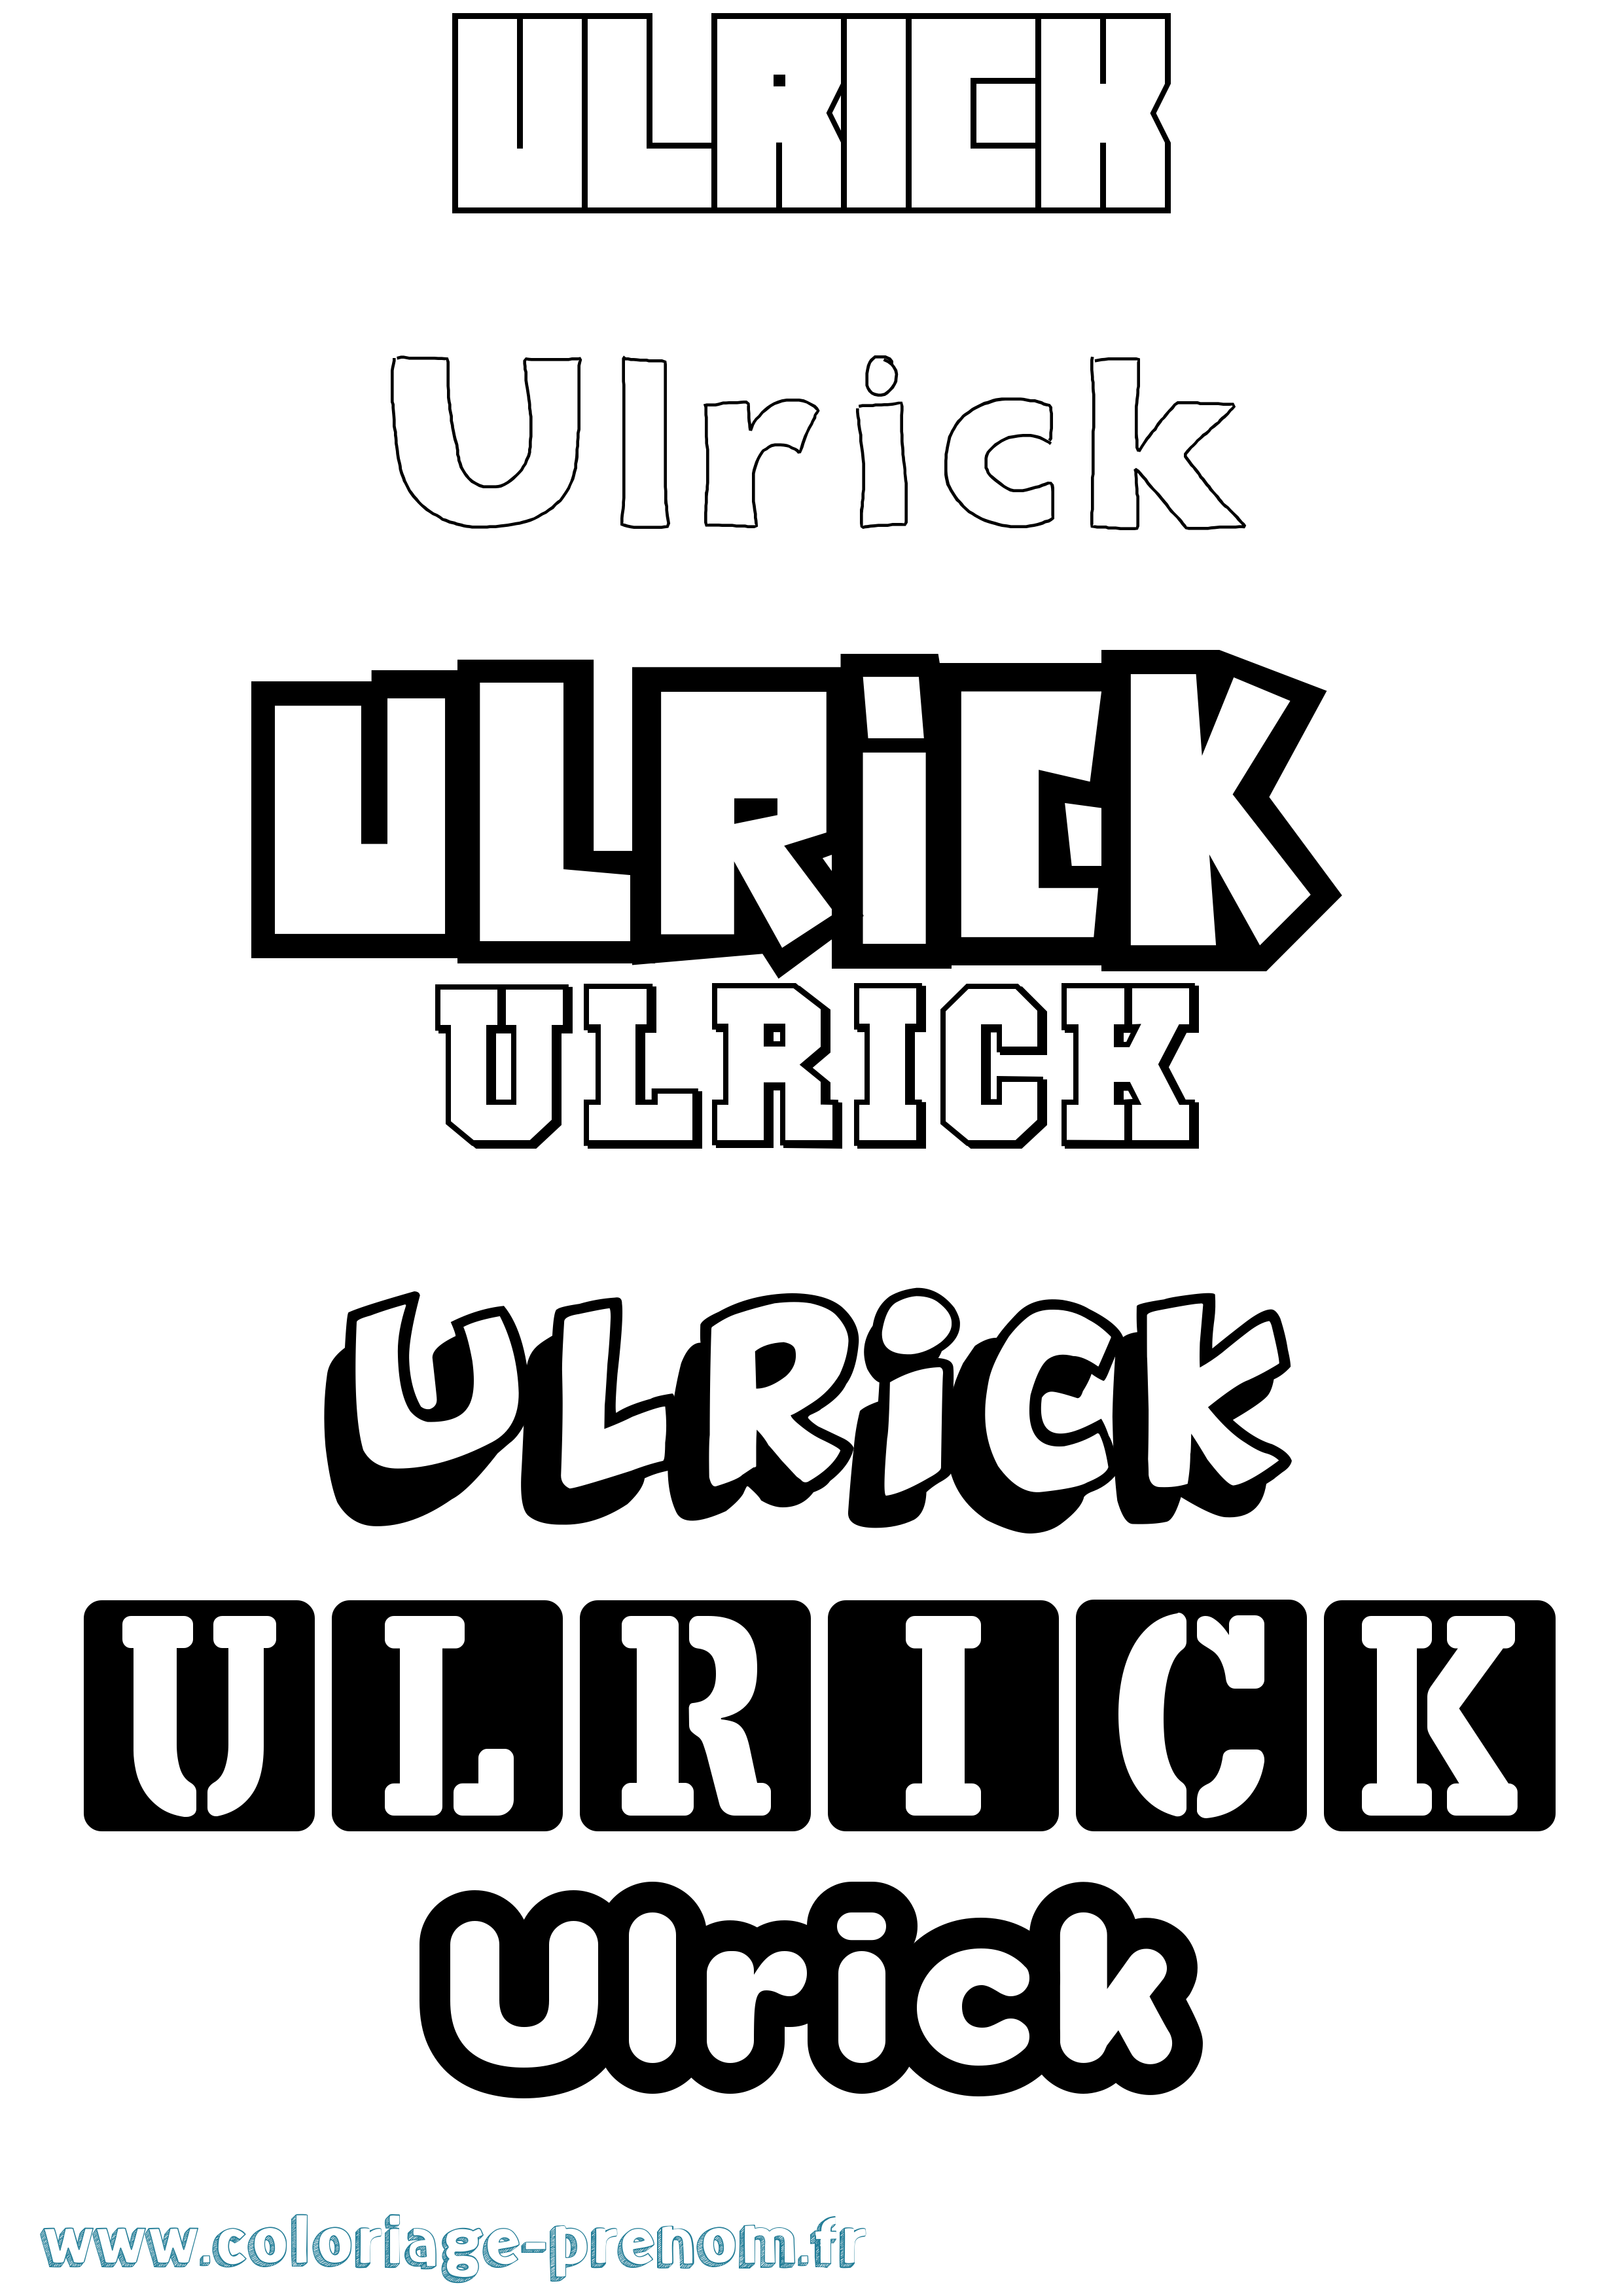 Coloriage prénom Ulrick Simple